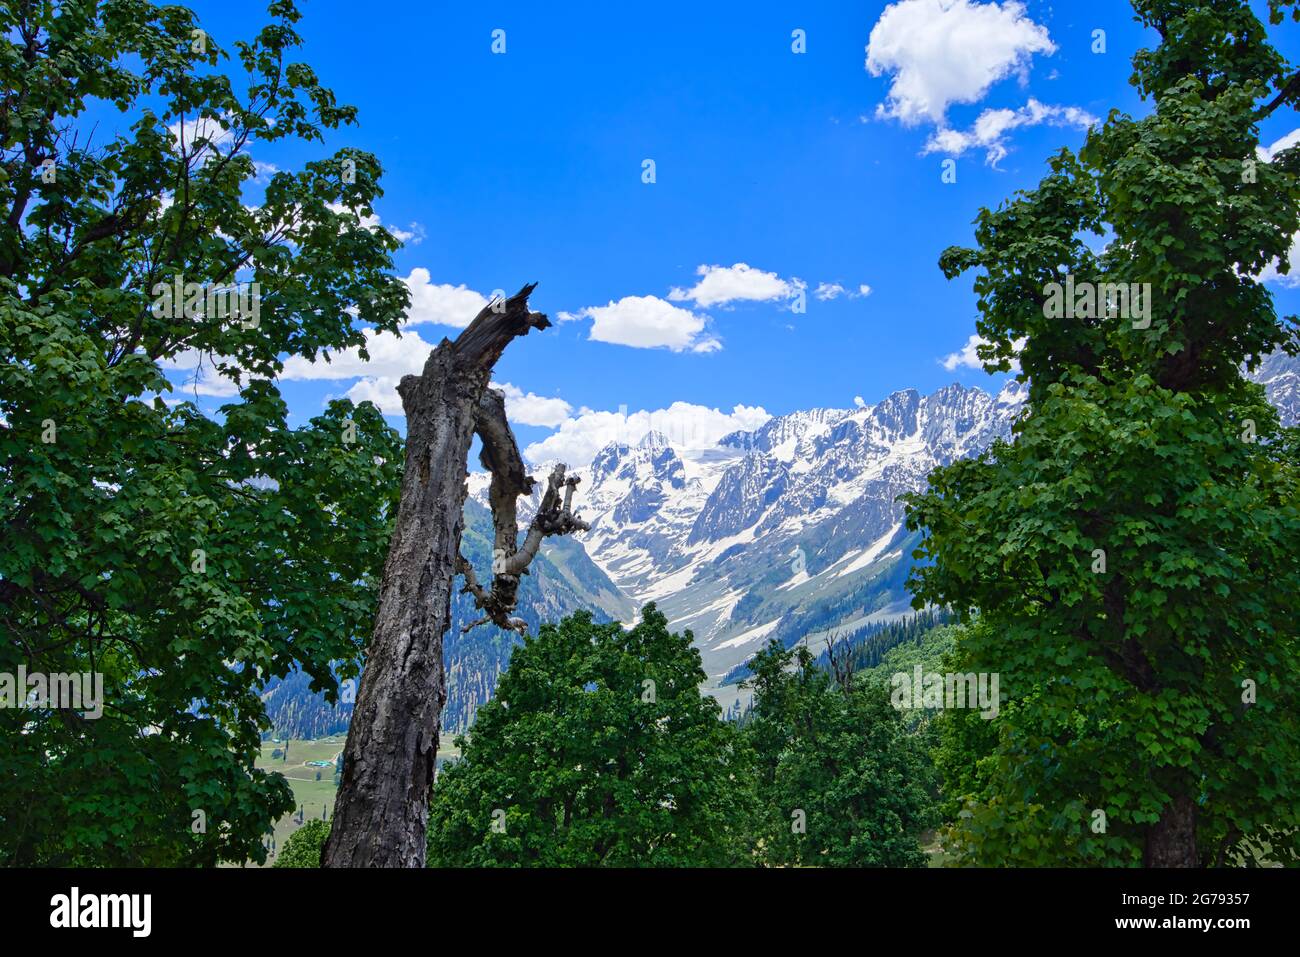 Splendido paesaggio montano. Albero, valle, neve, cielo blu, nuvole bianche. Viaggio approfondito sul Sonamarg Hill Trek a Jammu e Kashmir, India, giugno 2018 Foto Stock